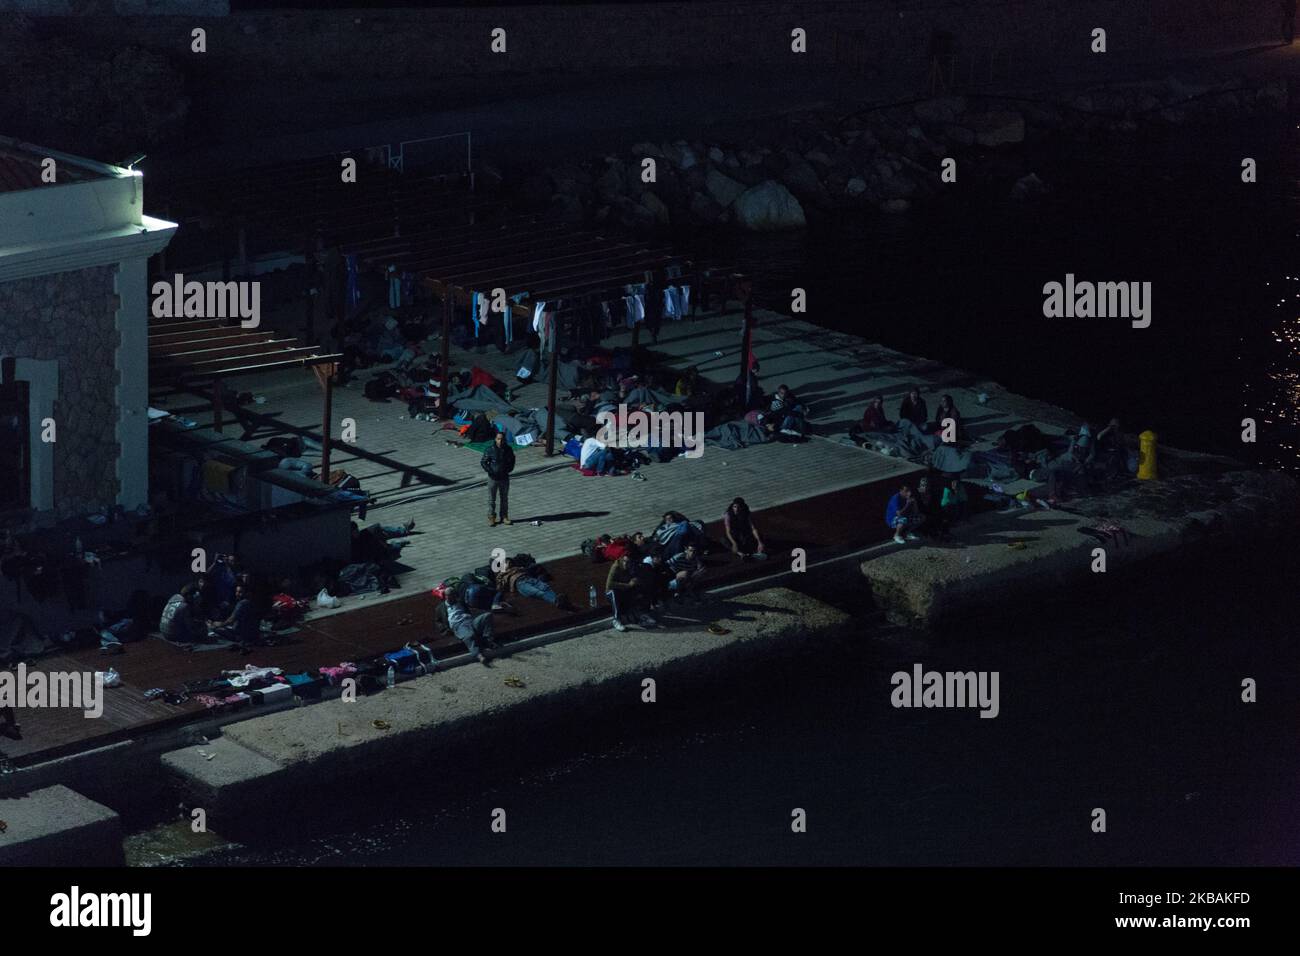 Sur 21 octobre 2015, environ 2 000 réfugiés débarquent dans le port de Pireus (Athènes). Ils ont passé une nuit sur le bateau Ariadni/Ariadne. Ariadni.Ariadne est l'un des 4th bateaux nolisés par le gouvernement grec qui amènent des réfugiés de l'île près de la Turquie à Athènes et au continent grec. Le mardi 20th octobre 2015. Le port de Chios regorge de réfugiés qui y vivent ou passent des heures avant de prendre un bateau d'Athènes. Les conditions de vie sont très pauvres. Les réfugiés dorment sur le sol (photo de Michaud Gael/NurPhoto) Banque D'Images